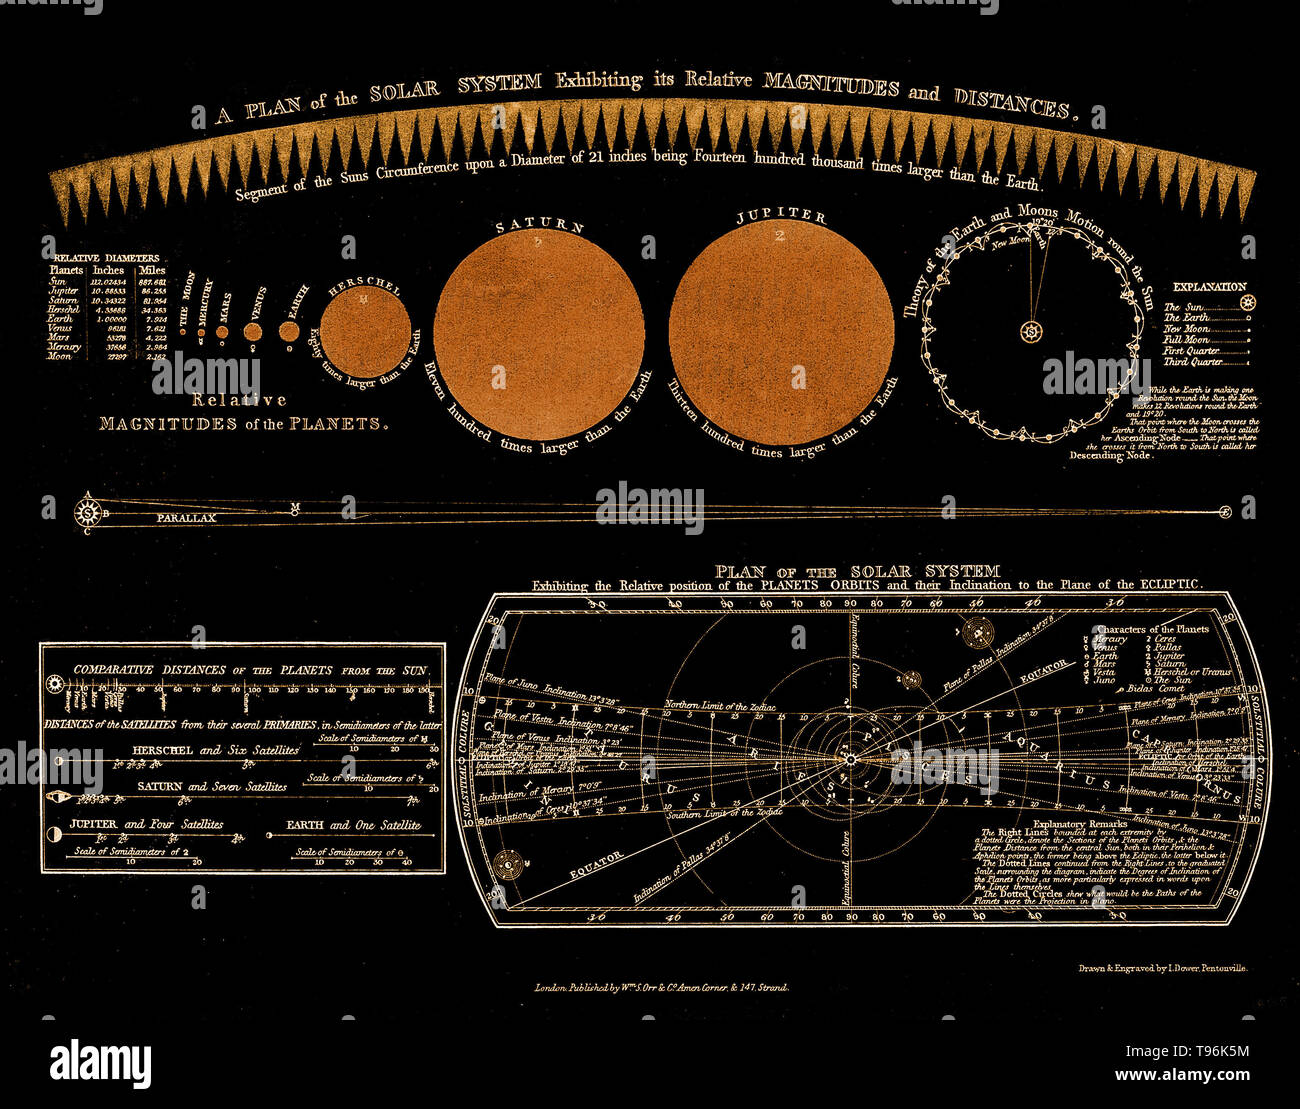 Un piano del sistema solare, mostrante grandezze relative e le distanze. Il pianeta Urano è qui chiamato Herschel. Incisione storica del XVIII secolo. William Herschel scoprì Urano il 13 marzo 1781, espandendo i confini noti del Sistema Solare e rendendo il primo pianeta scoperto con un telescopio. Il consenso sul nome non era stato raggiunto fino a quasi 70 anni dopo il pianeta la scoperta. Foto Stock